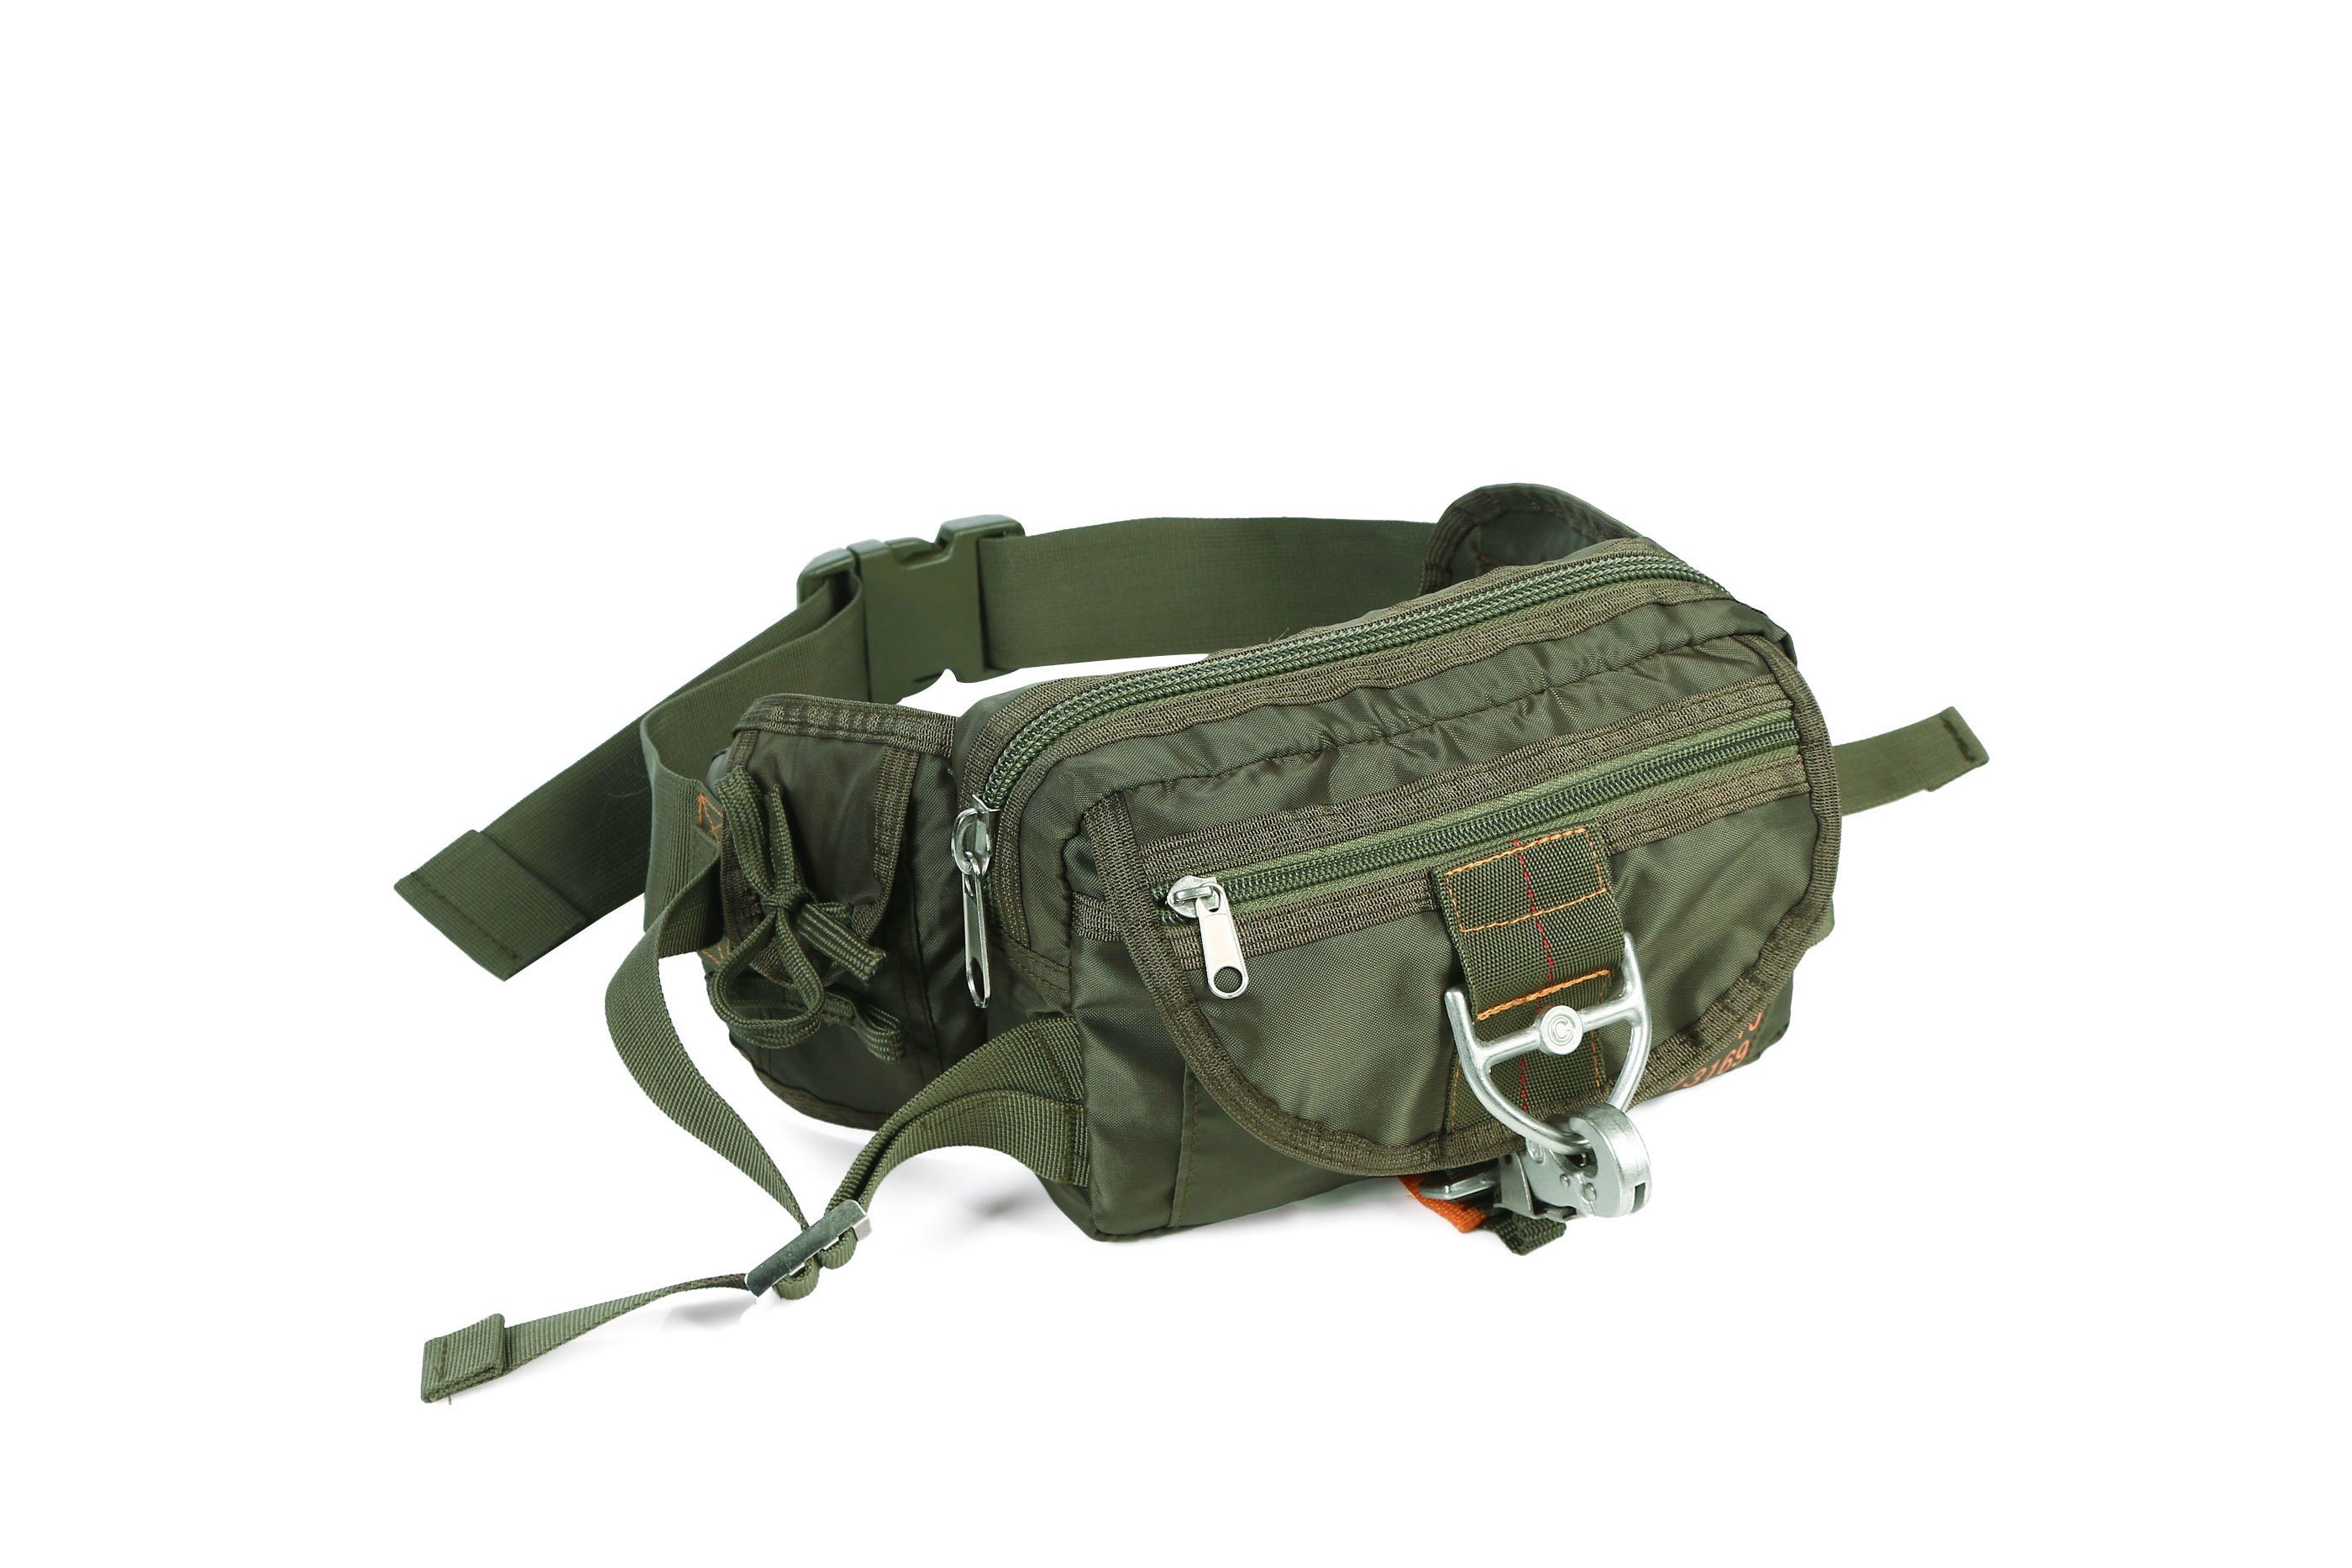 Newest Design Tactical Lightweight Waist Parachute Bag for Outdoor